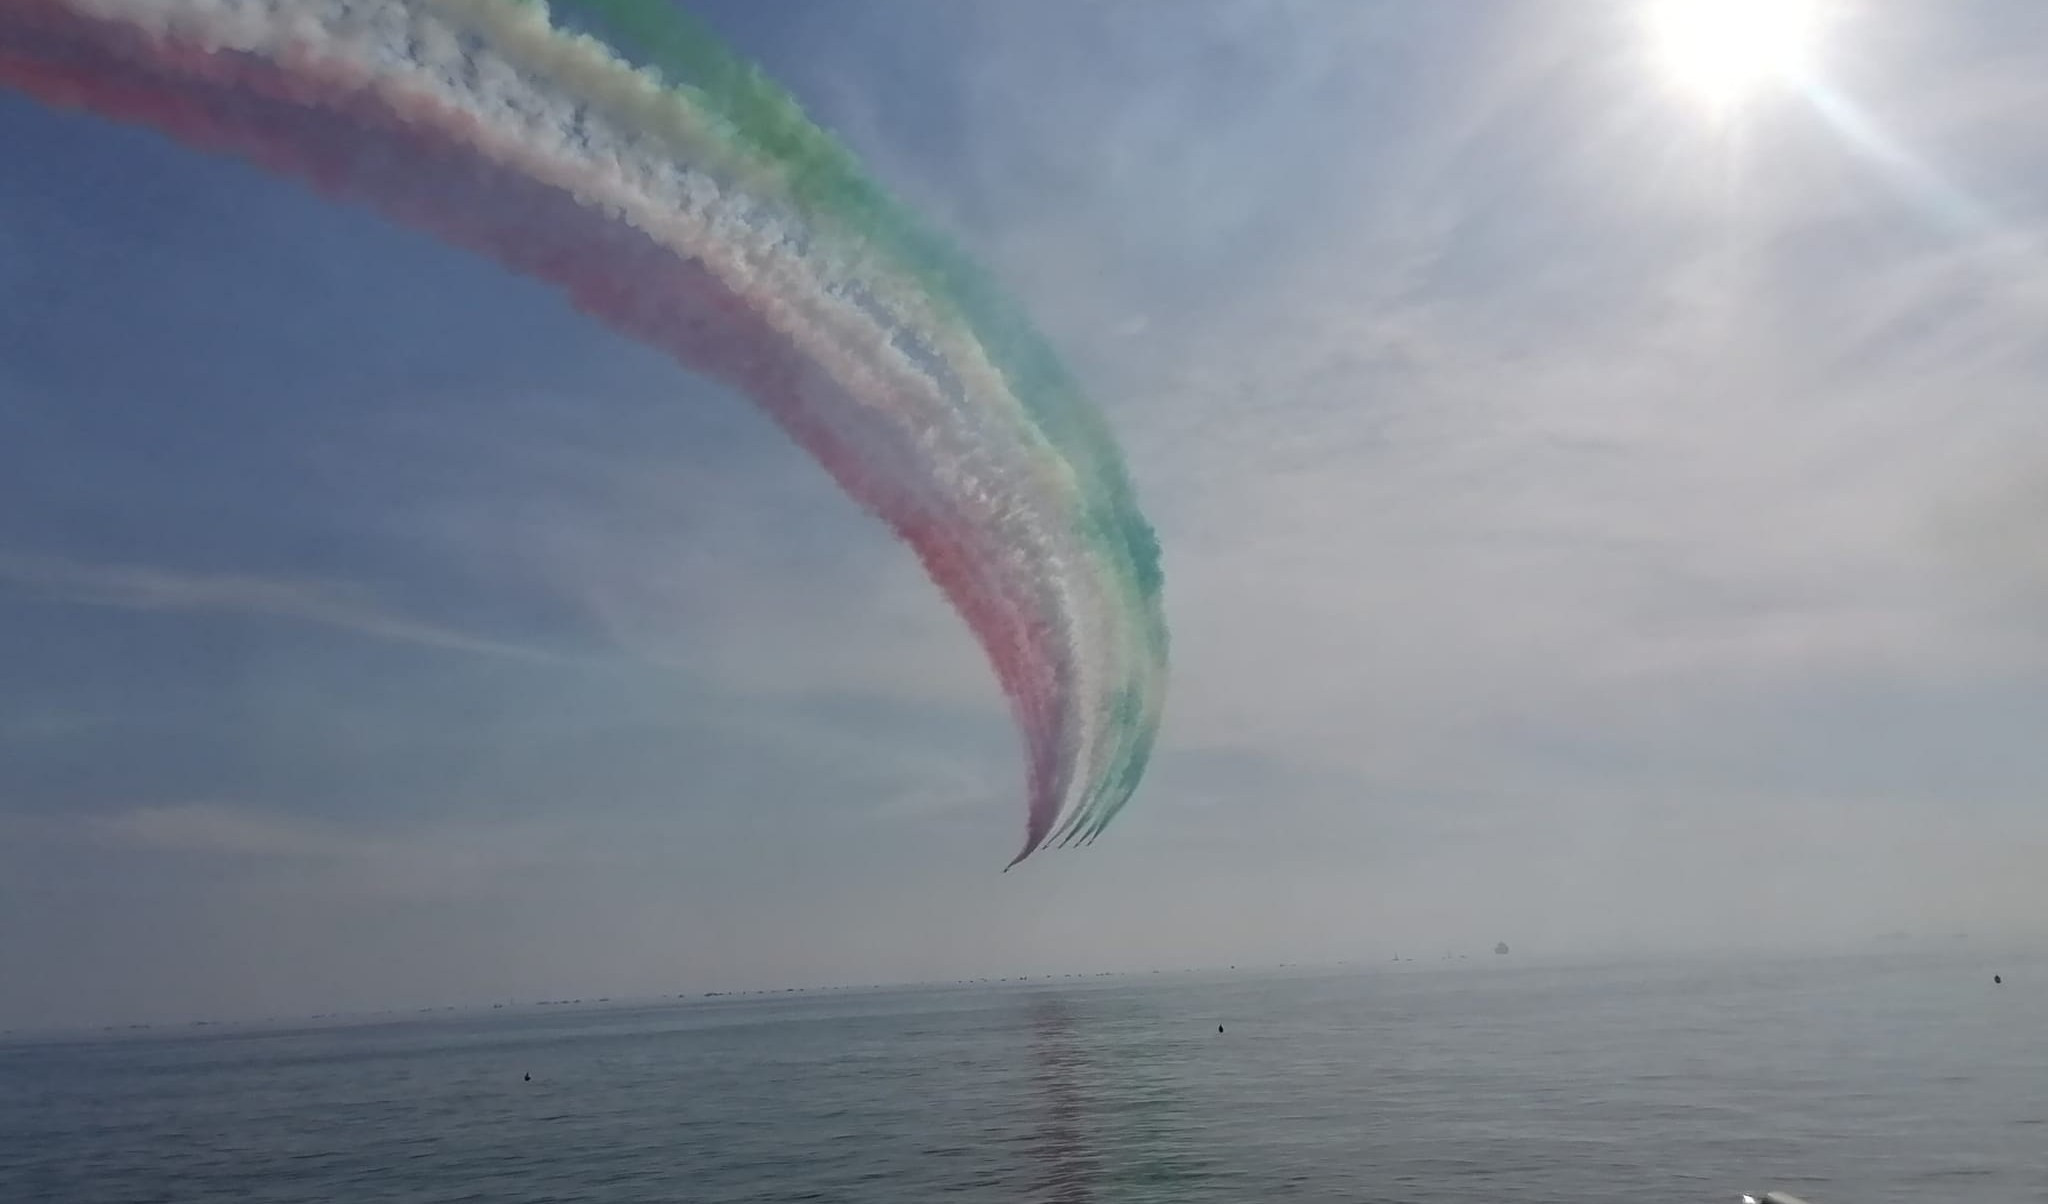 Le Frecce Tricolori a Genova - le immagini più belle di Primocanale Production